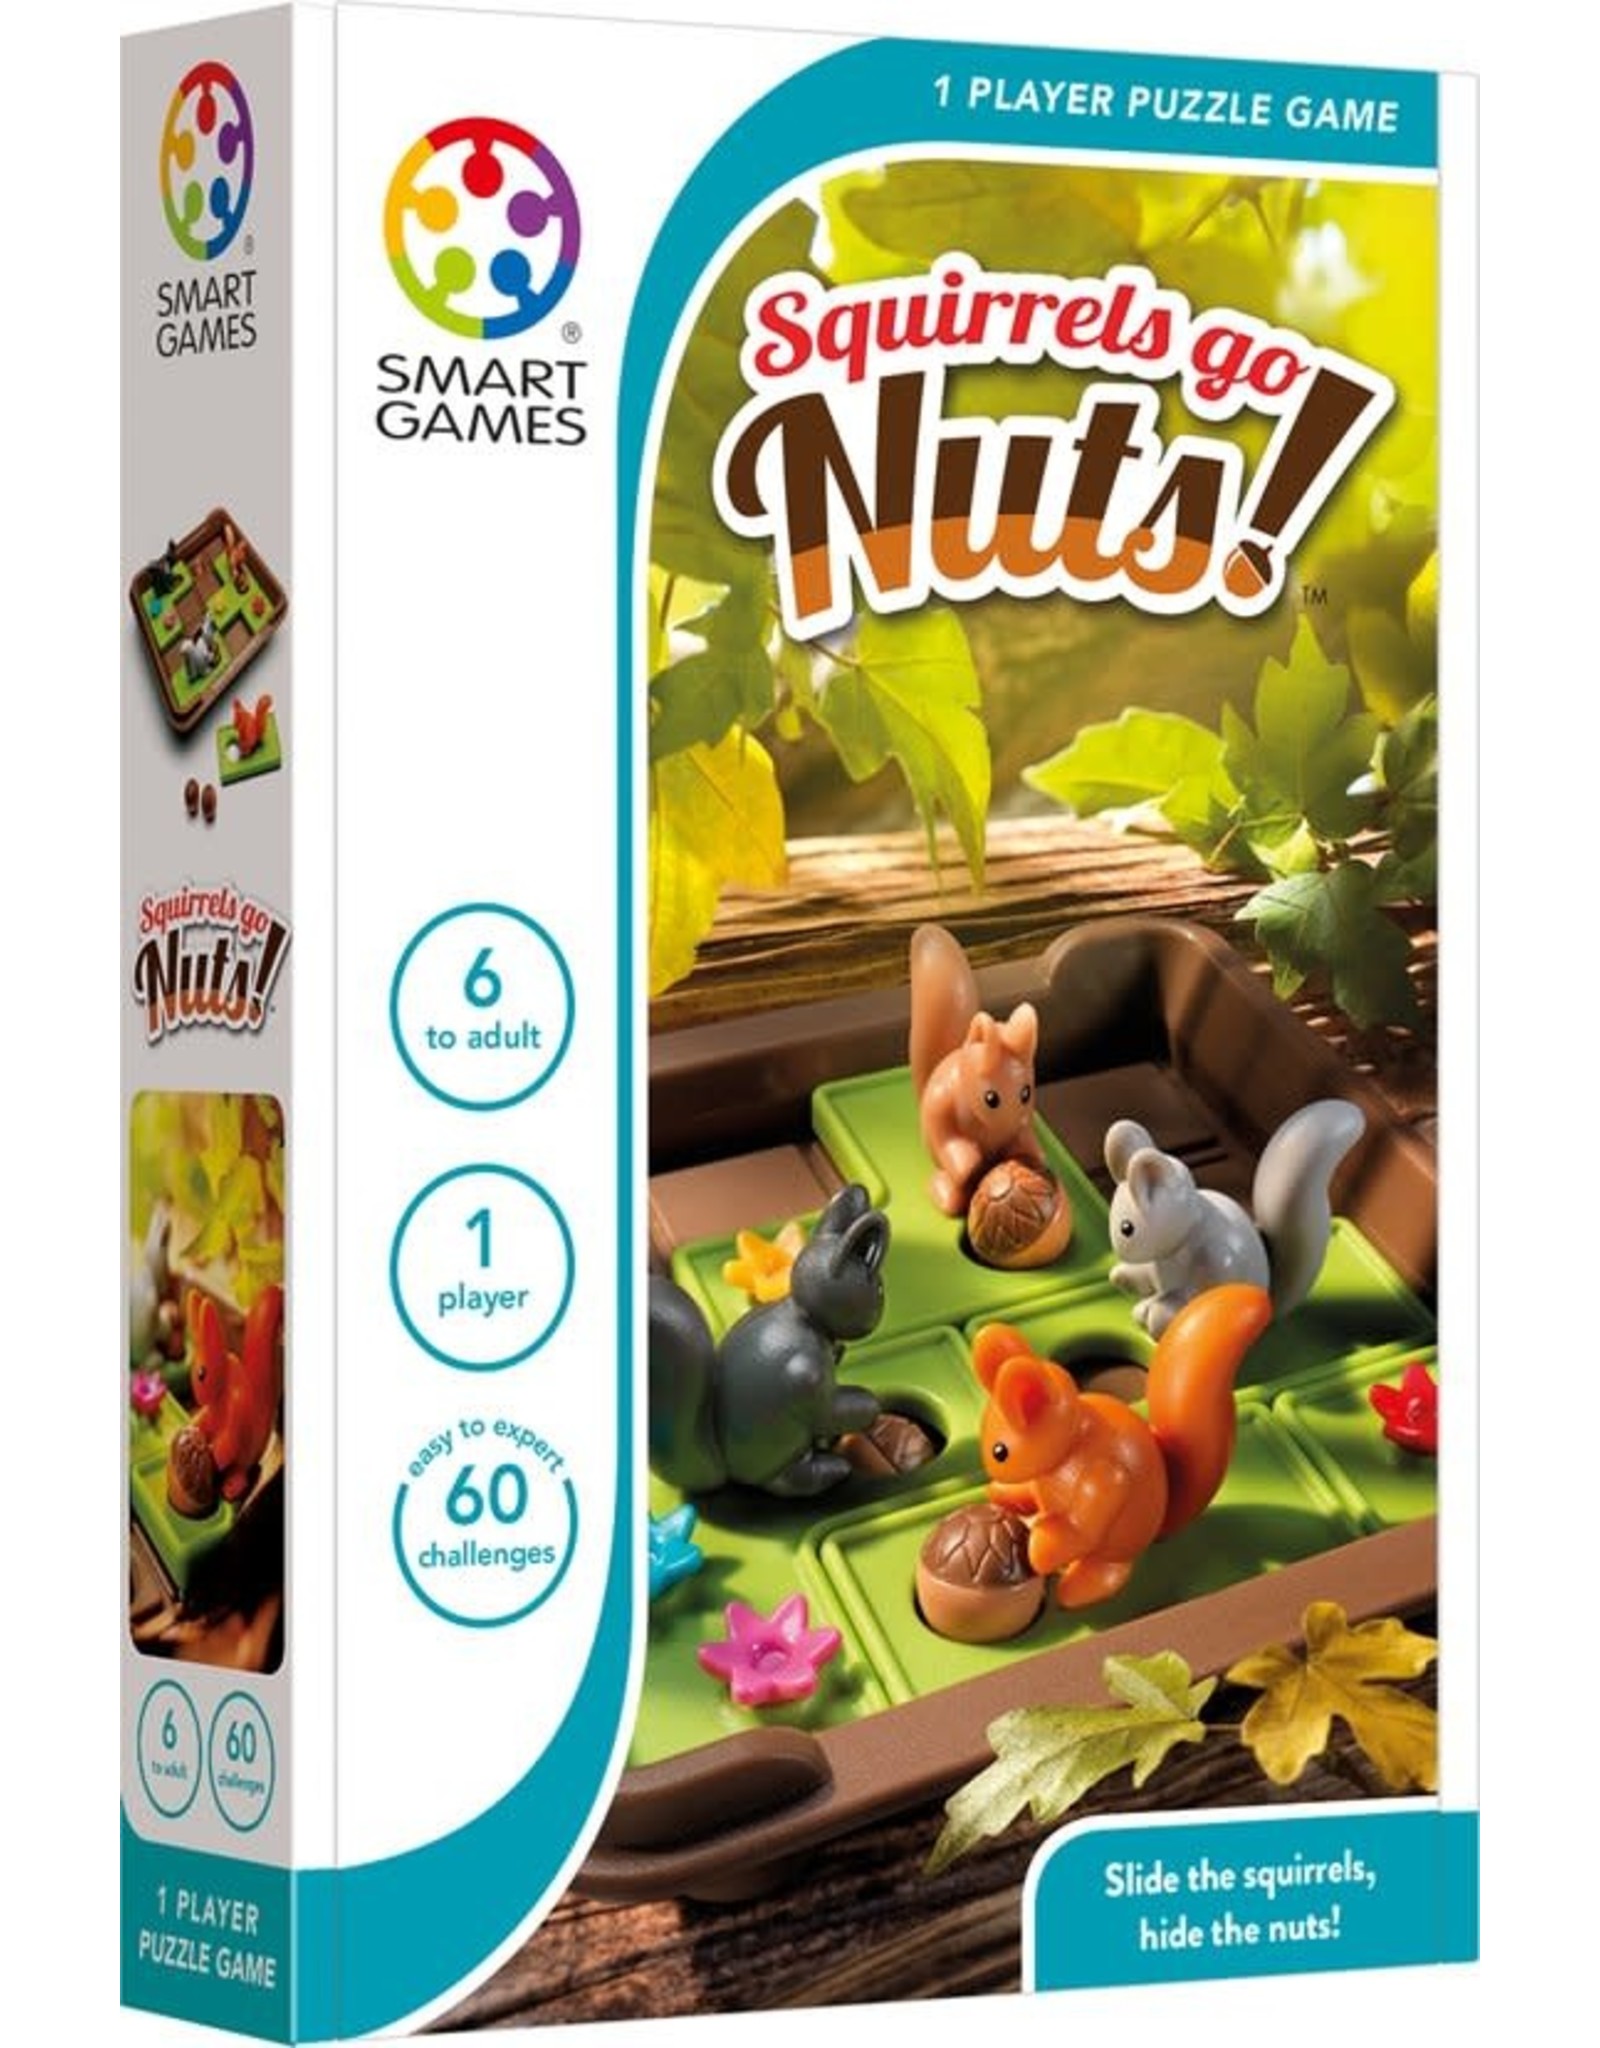 SmartGames Smart Games Compact - Squirrels Go Nuts